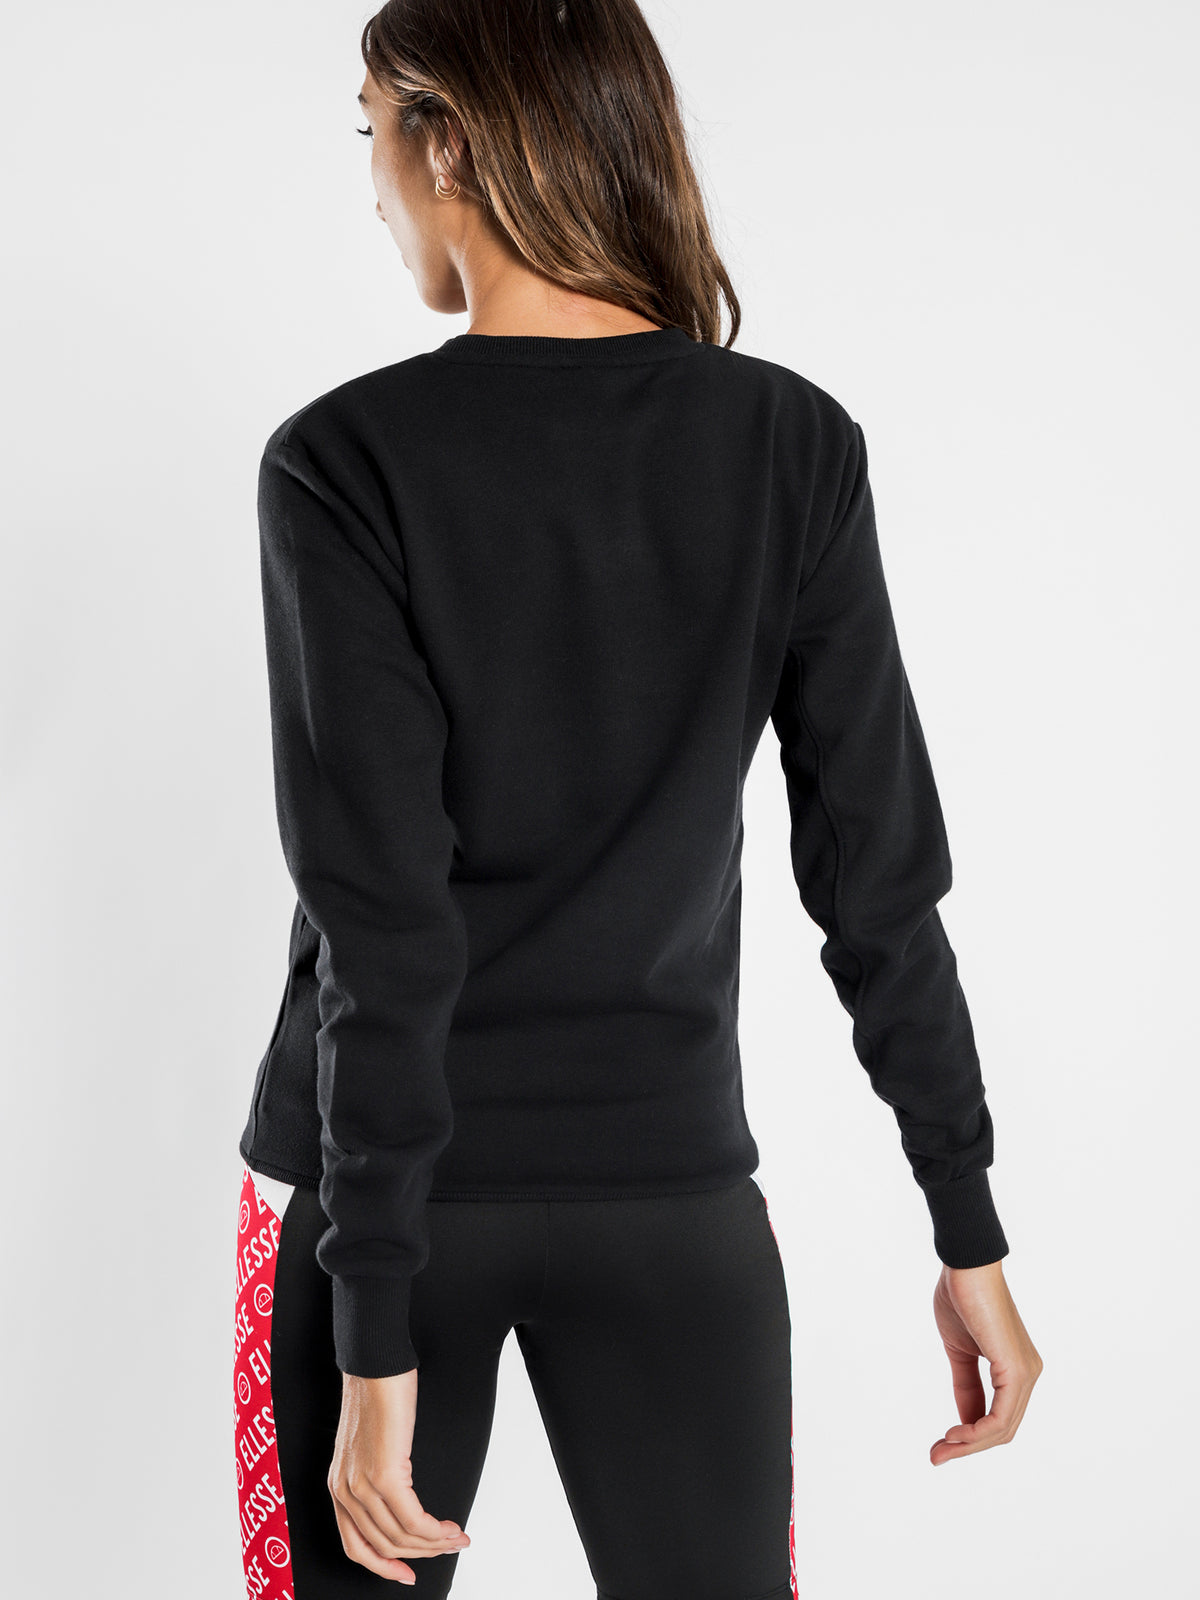 Eureka Crew Sweater in Black